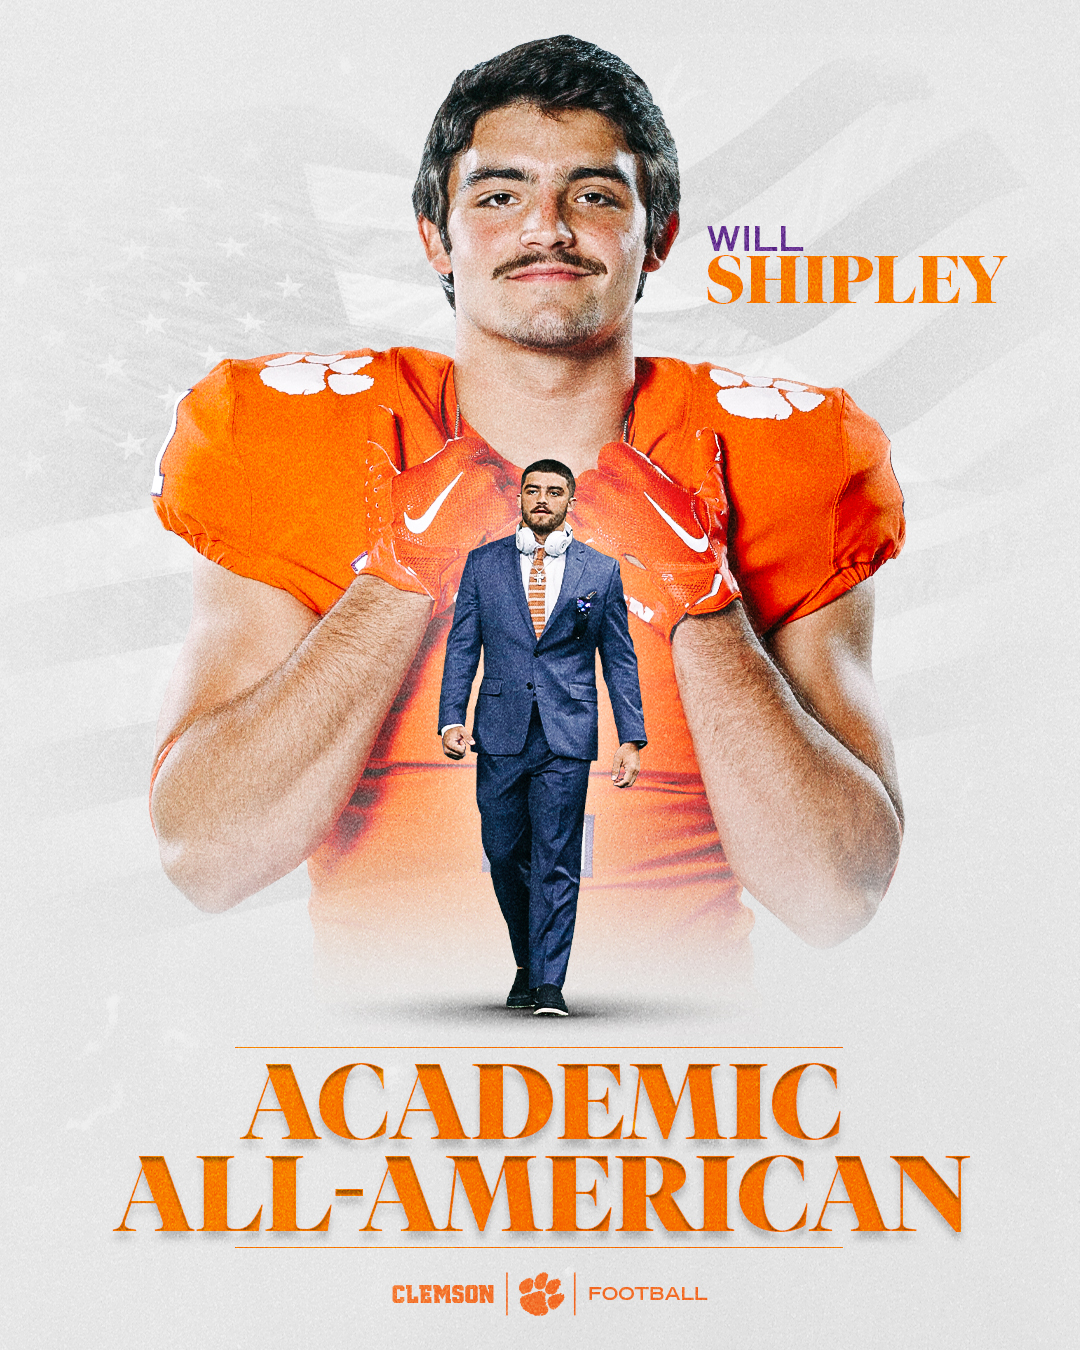 Shipley Earns Academic All-America Honors